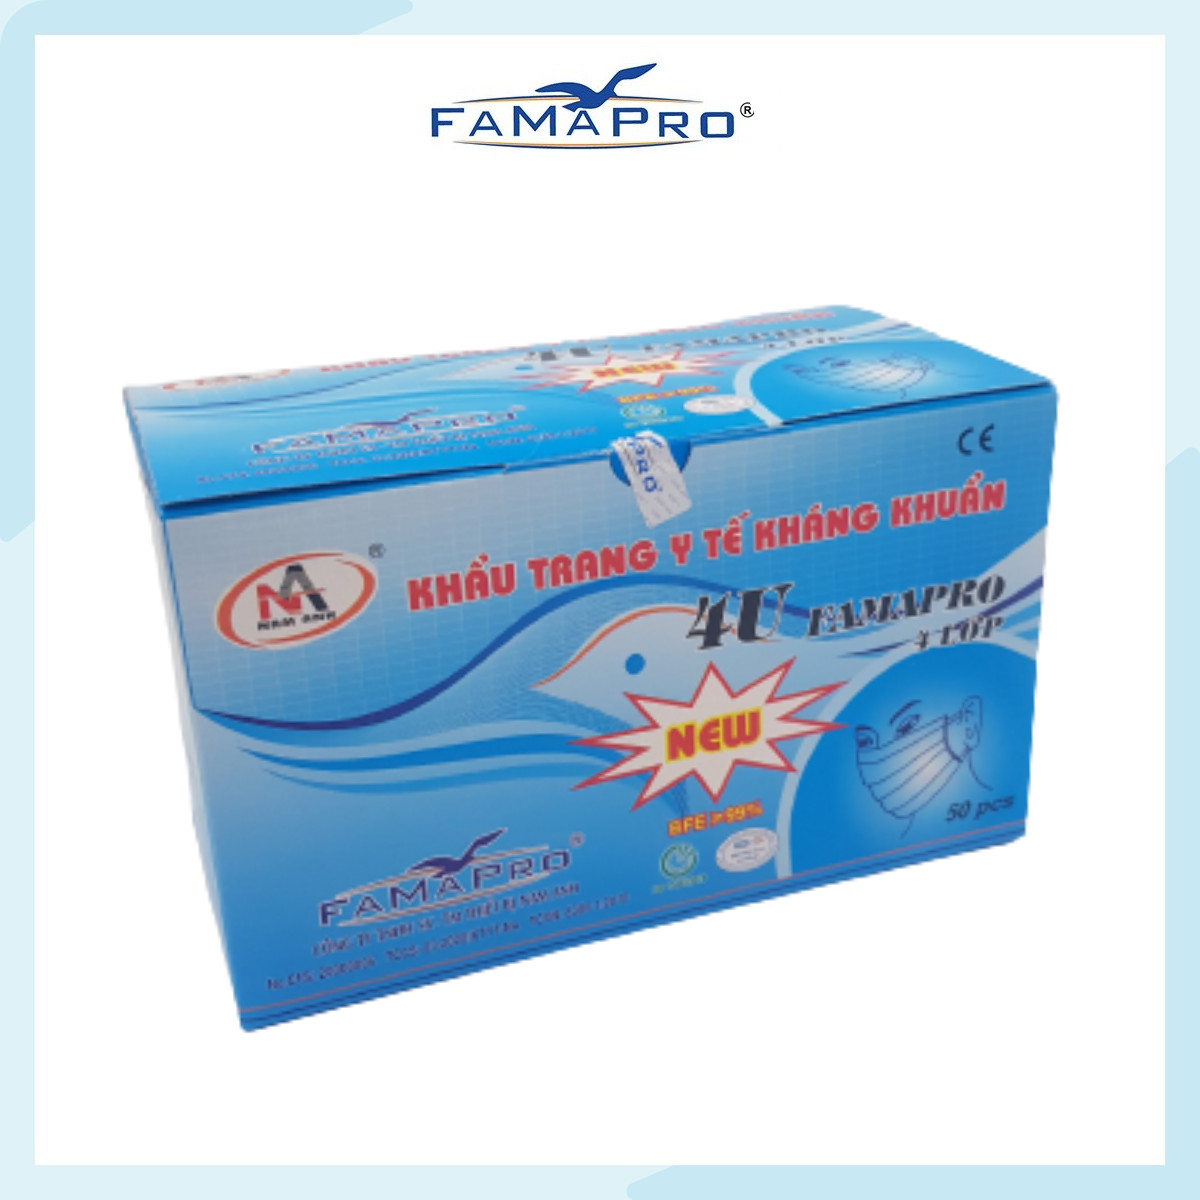 [CHÍNH HÃNG] COMBO 5 HỘP - Khẩu trang y tế 4 lớp kháng khuẩn Famapro 4U (50 cái/ hộp )